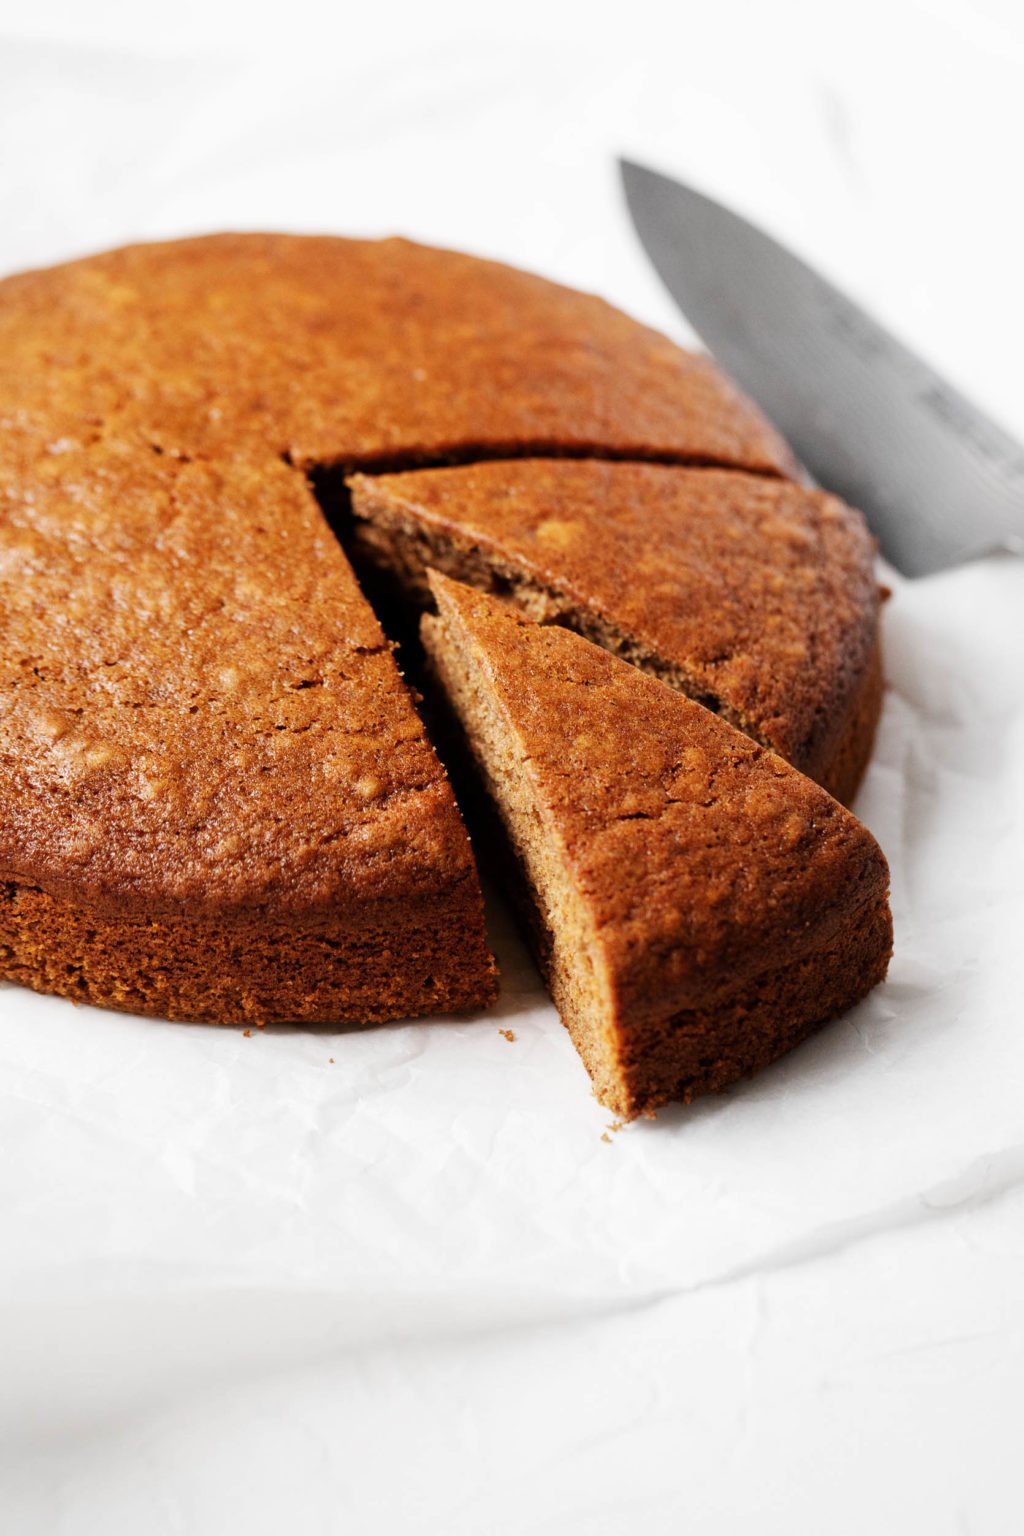 Se corta en rodajas un pastel de pan de jengibre redondo de color marrón dorado.